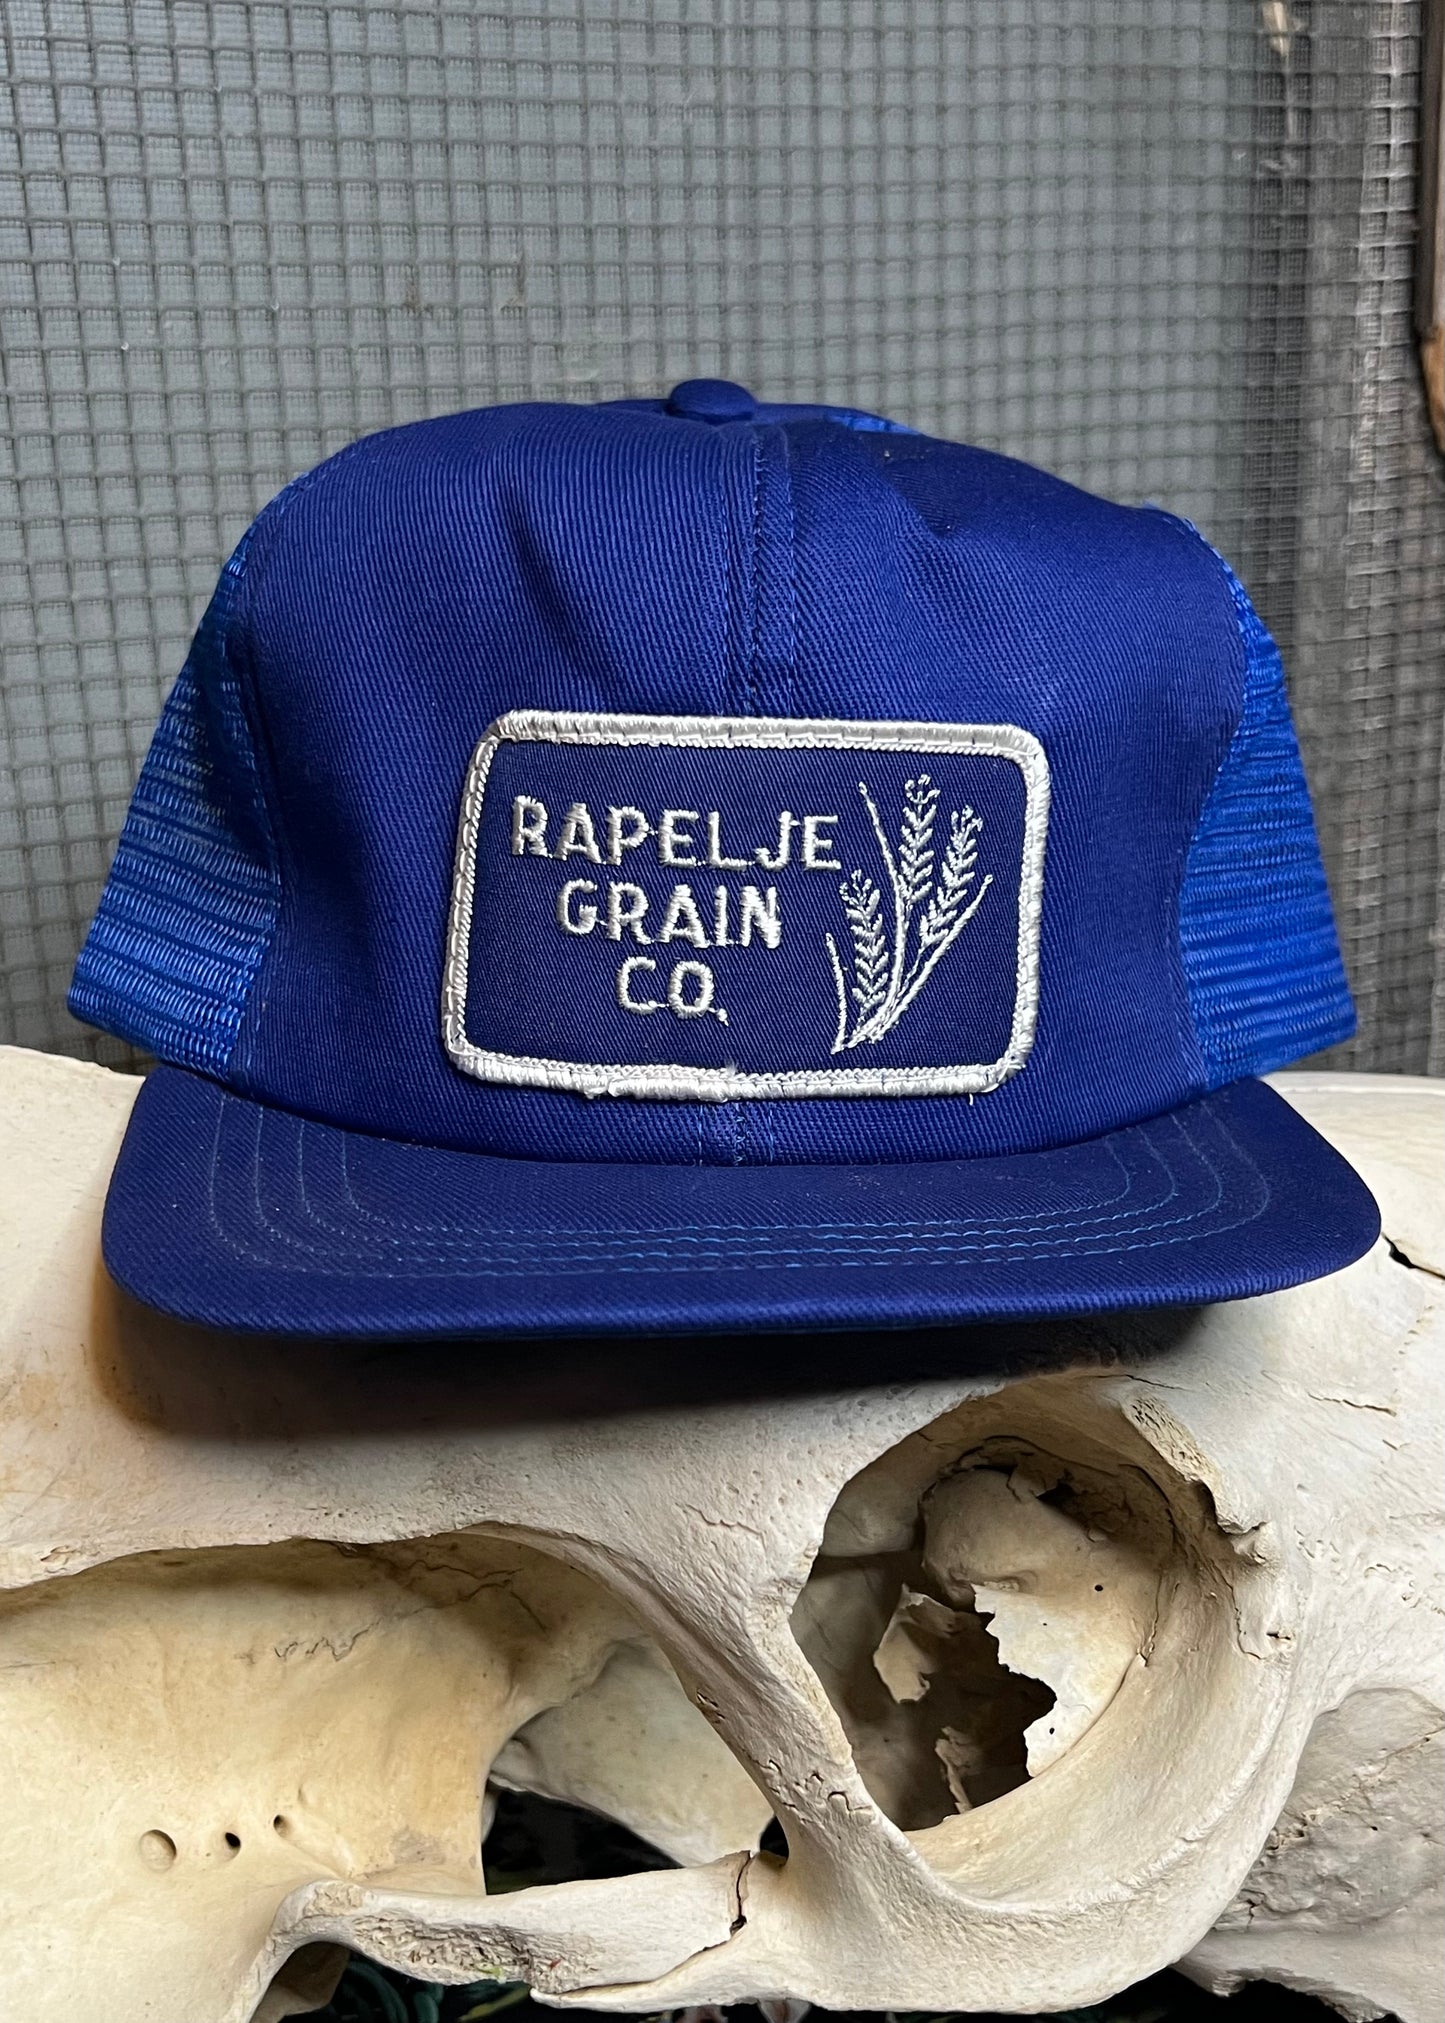 Rapelje Grain Co Trucker Cap